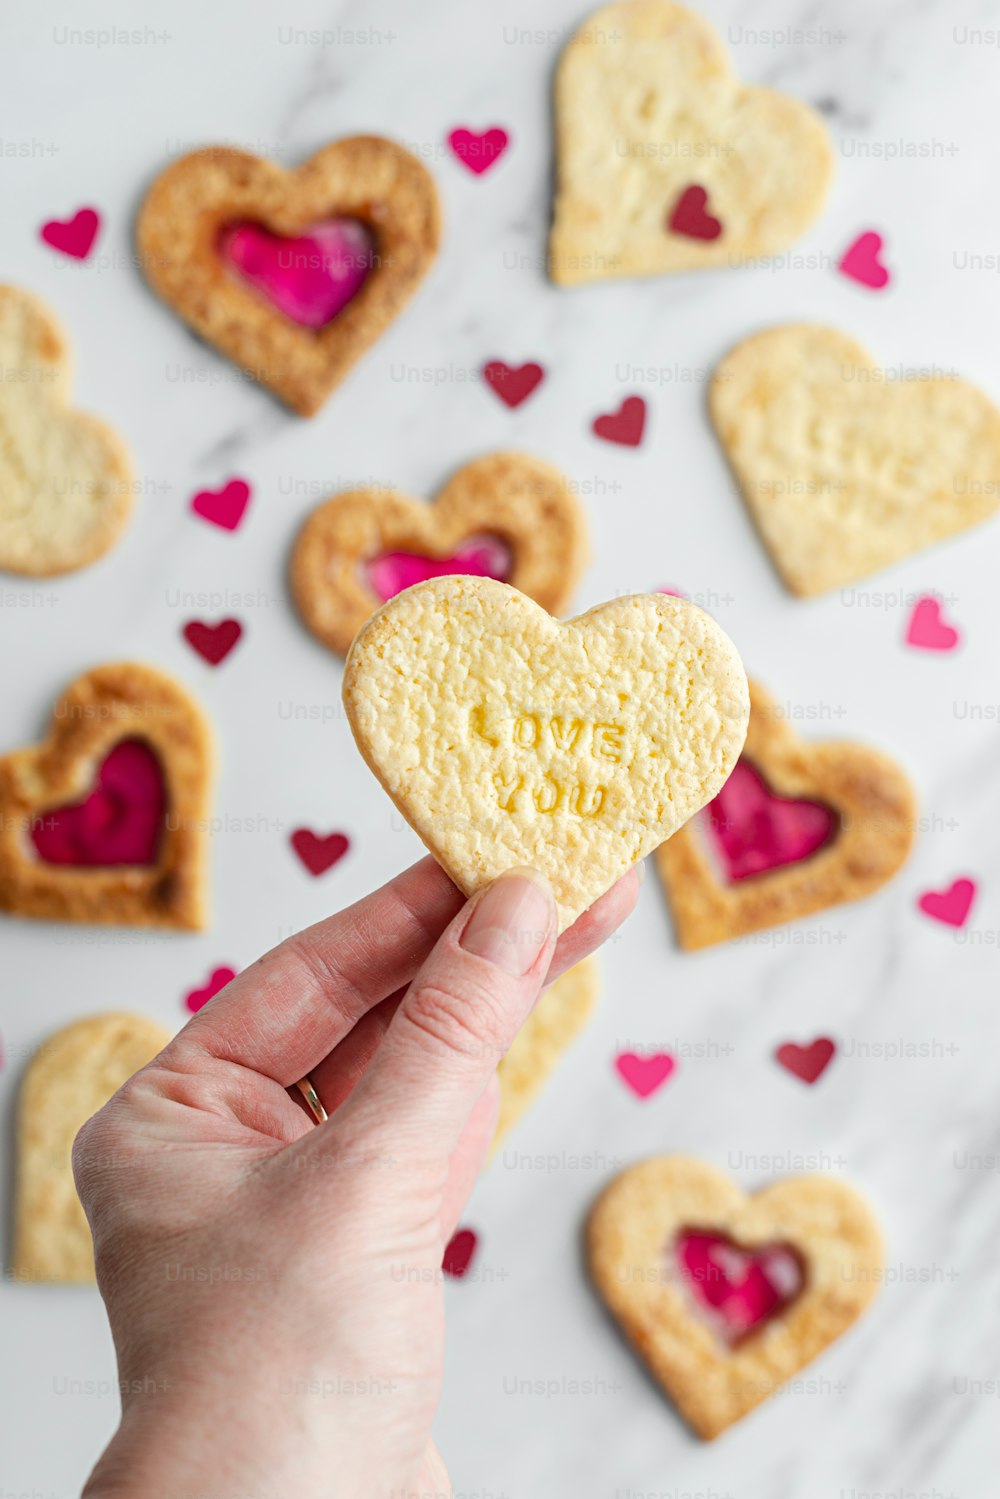 uma pessoa segurando um biscoito em forma de coração em sua mão